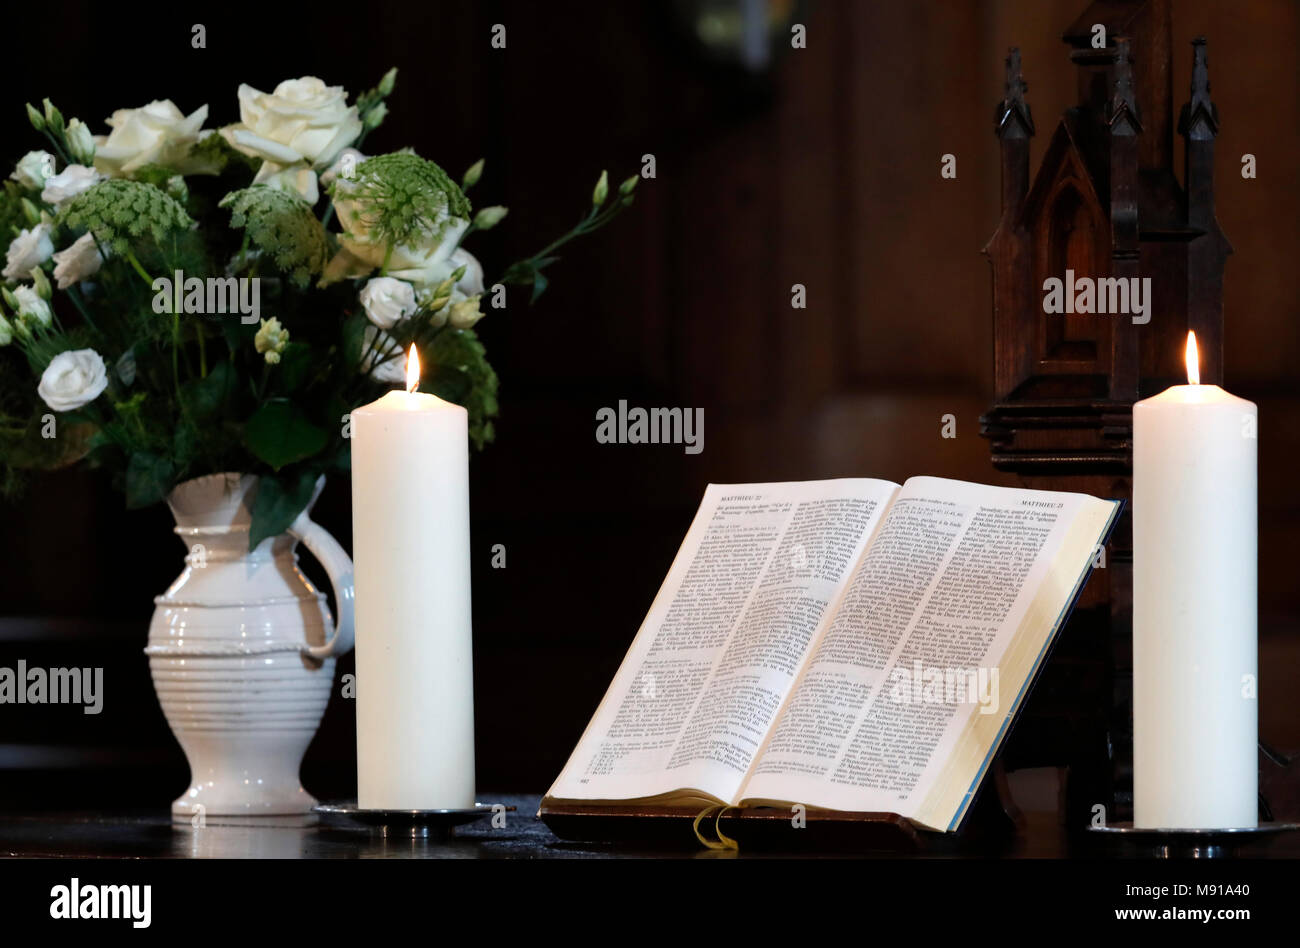 Les bougies et l'église bible ouverte sur un autel. Strasbourg. La France. Banque D'Images